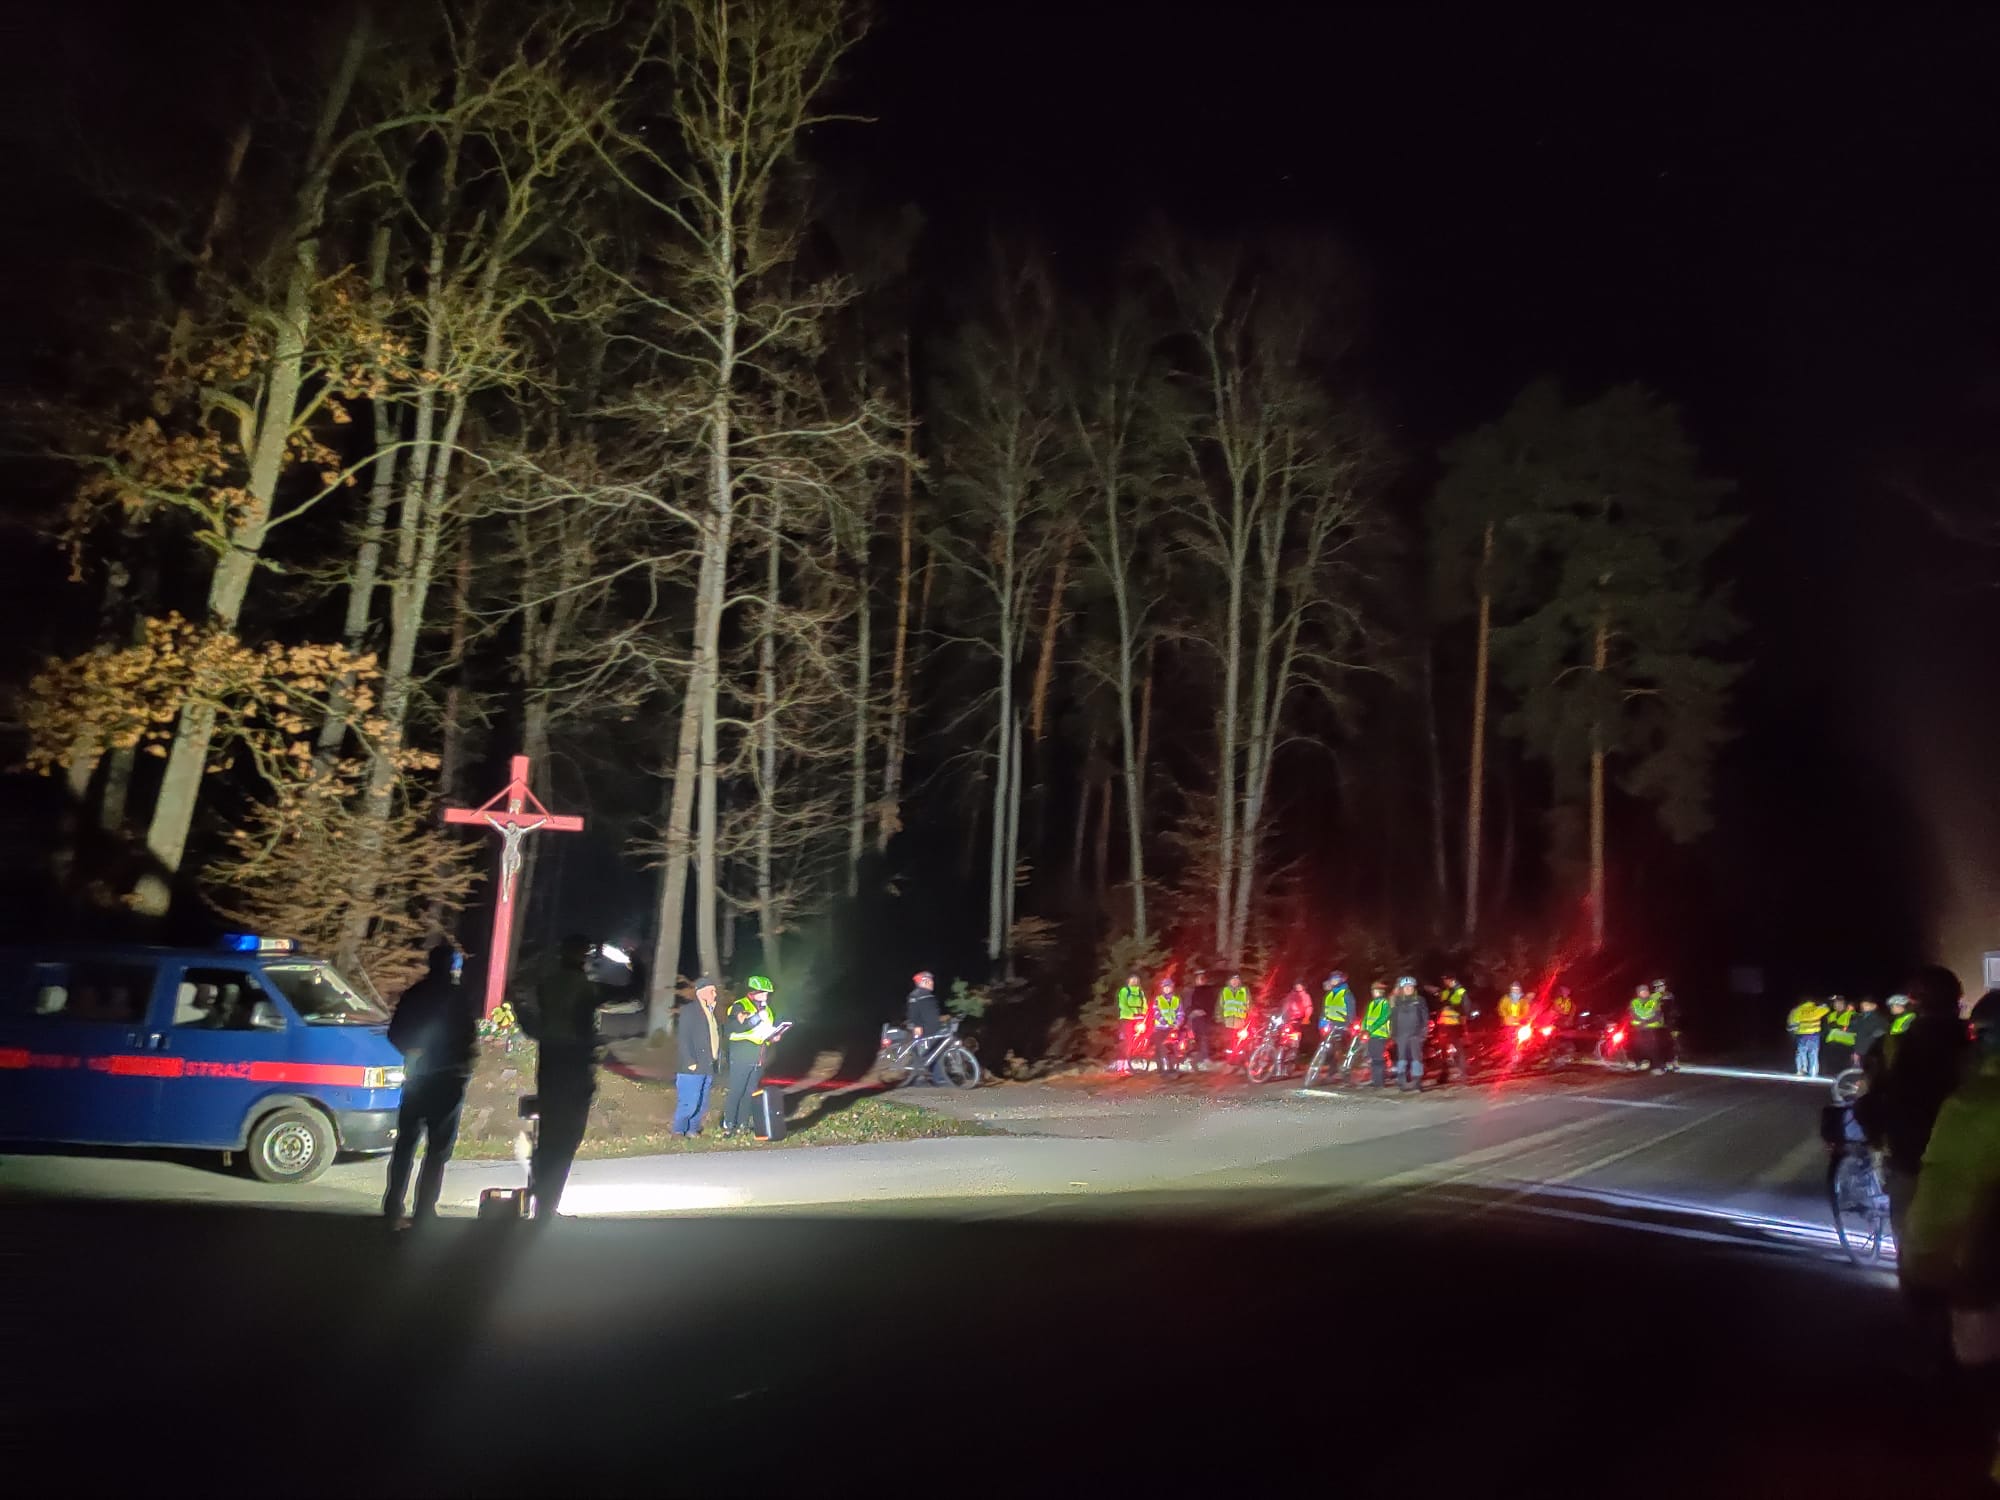 Rowerowa Droga Krzyżowa | Las nocą, drzewa oświetlone reflektorami. Między drzewami duży czerwony krzyż. Obok grupa kolarzy ze swoimi rowerami, z boku samochód straży.jpg